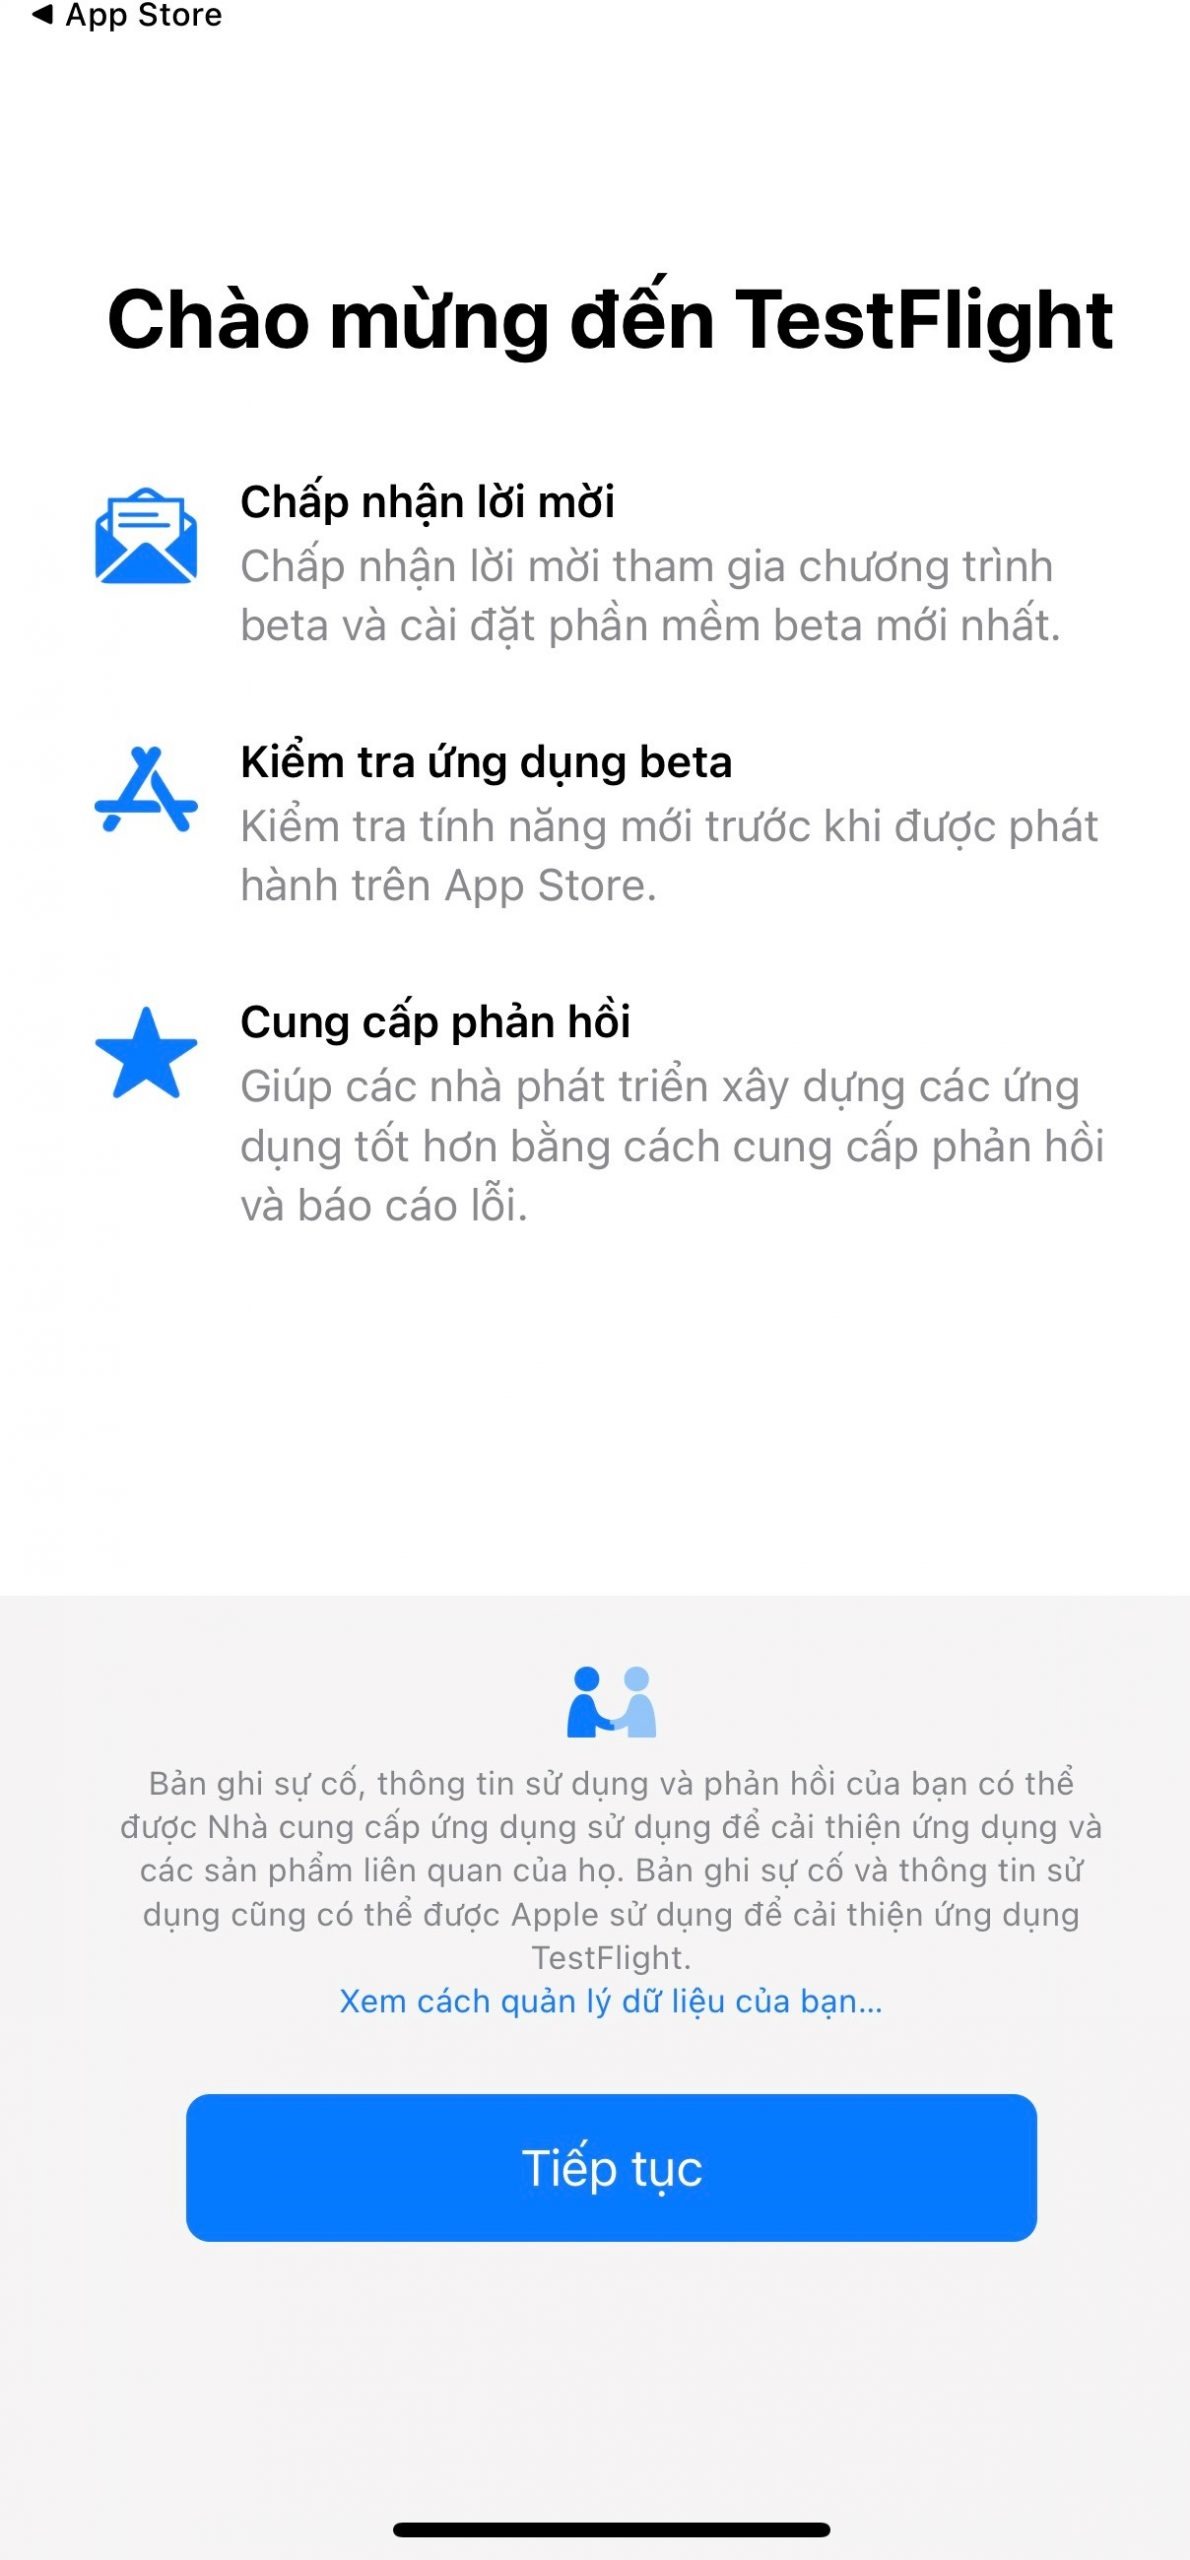 hướng dẫn tải app Haitau.vn trên hệ điều hành IOS